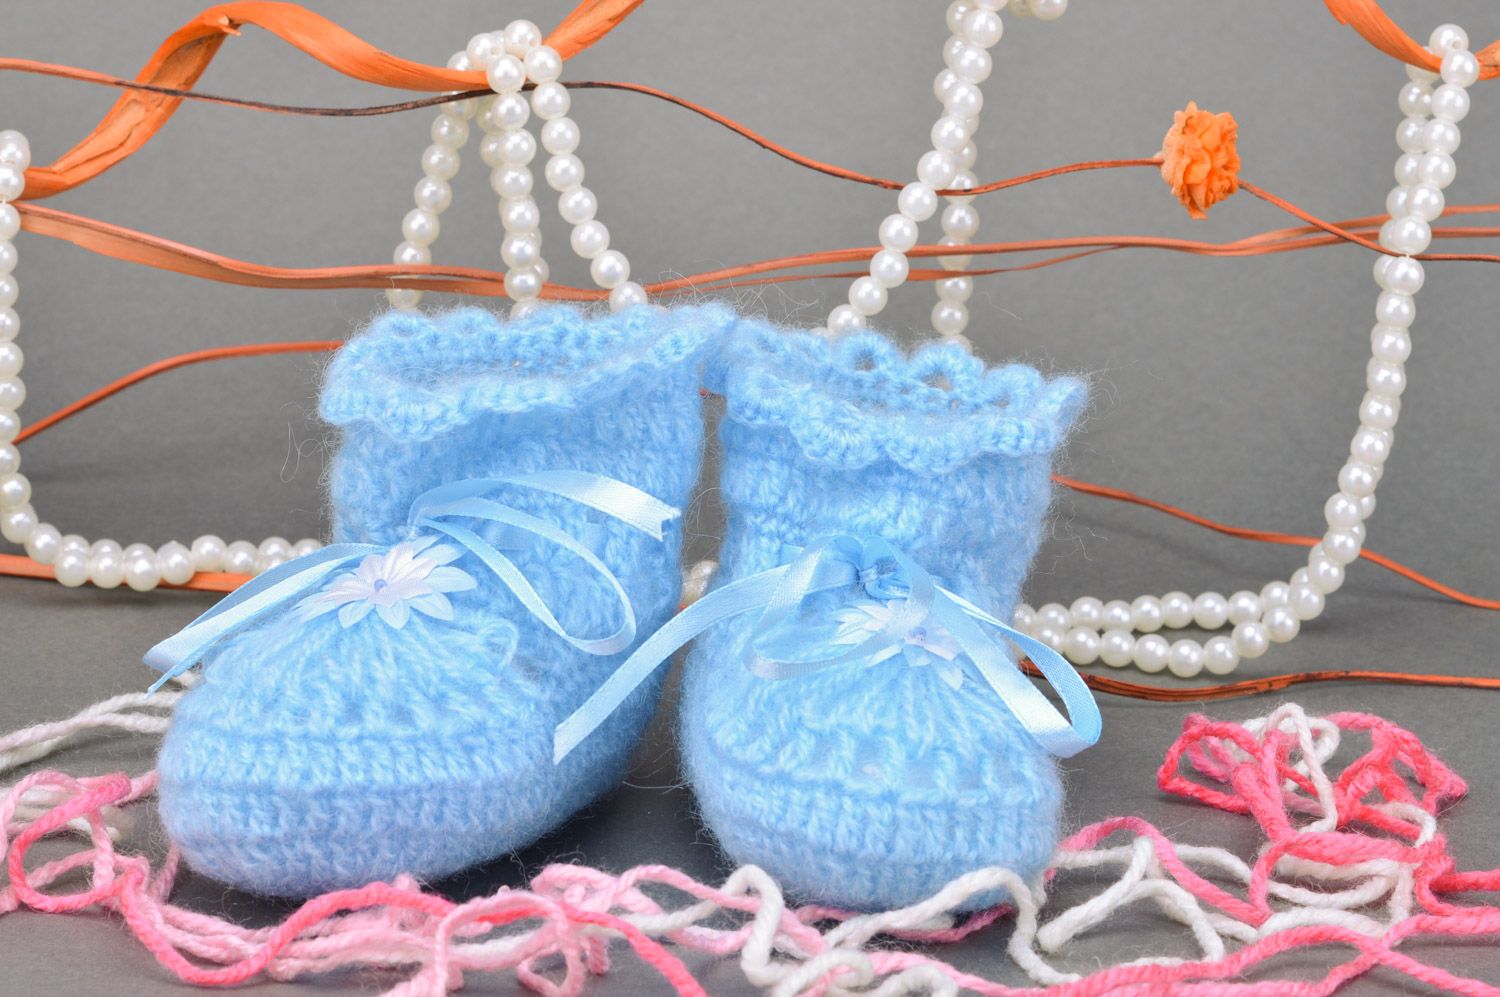 Chaussons de bébé tricotés manuellement d'acryl bleu ciel pour garçon  photo 1